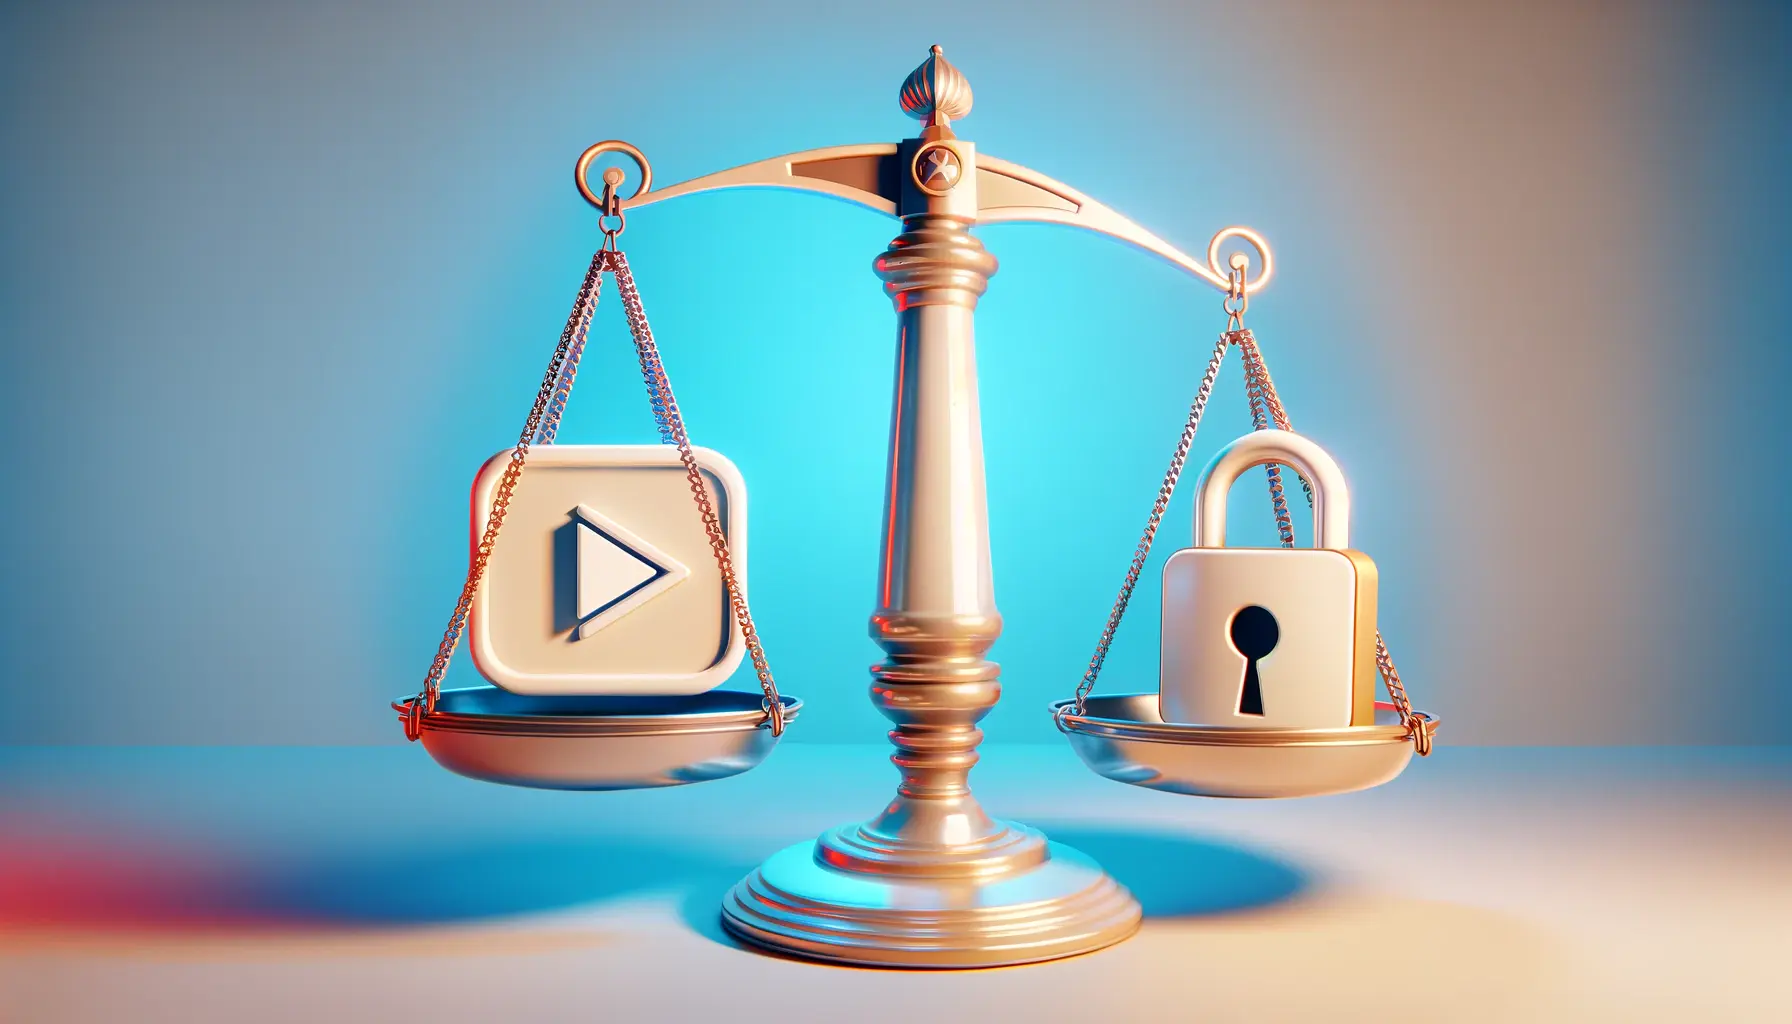 Dijital Etik: Youtube İçeriklerinde Etik Standartları Koruma